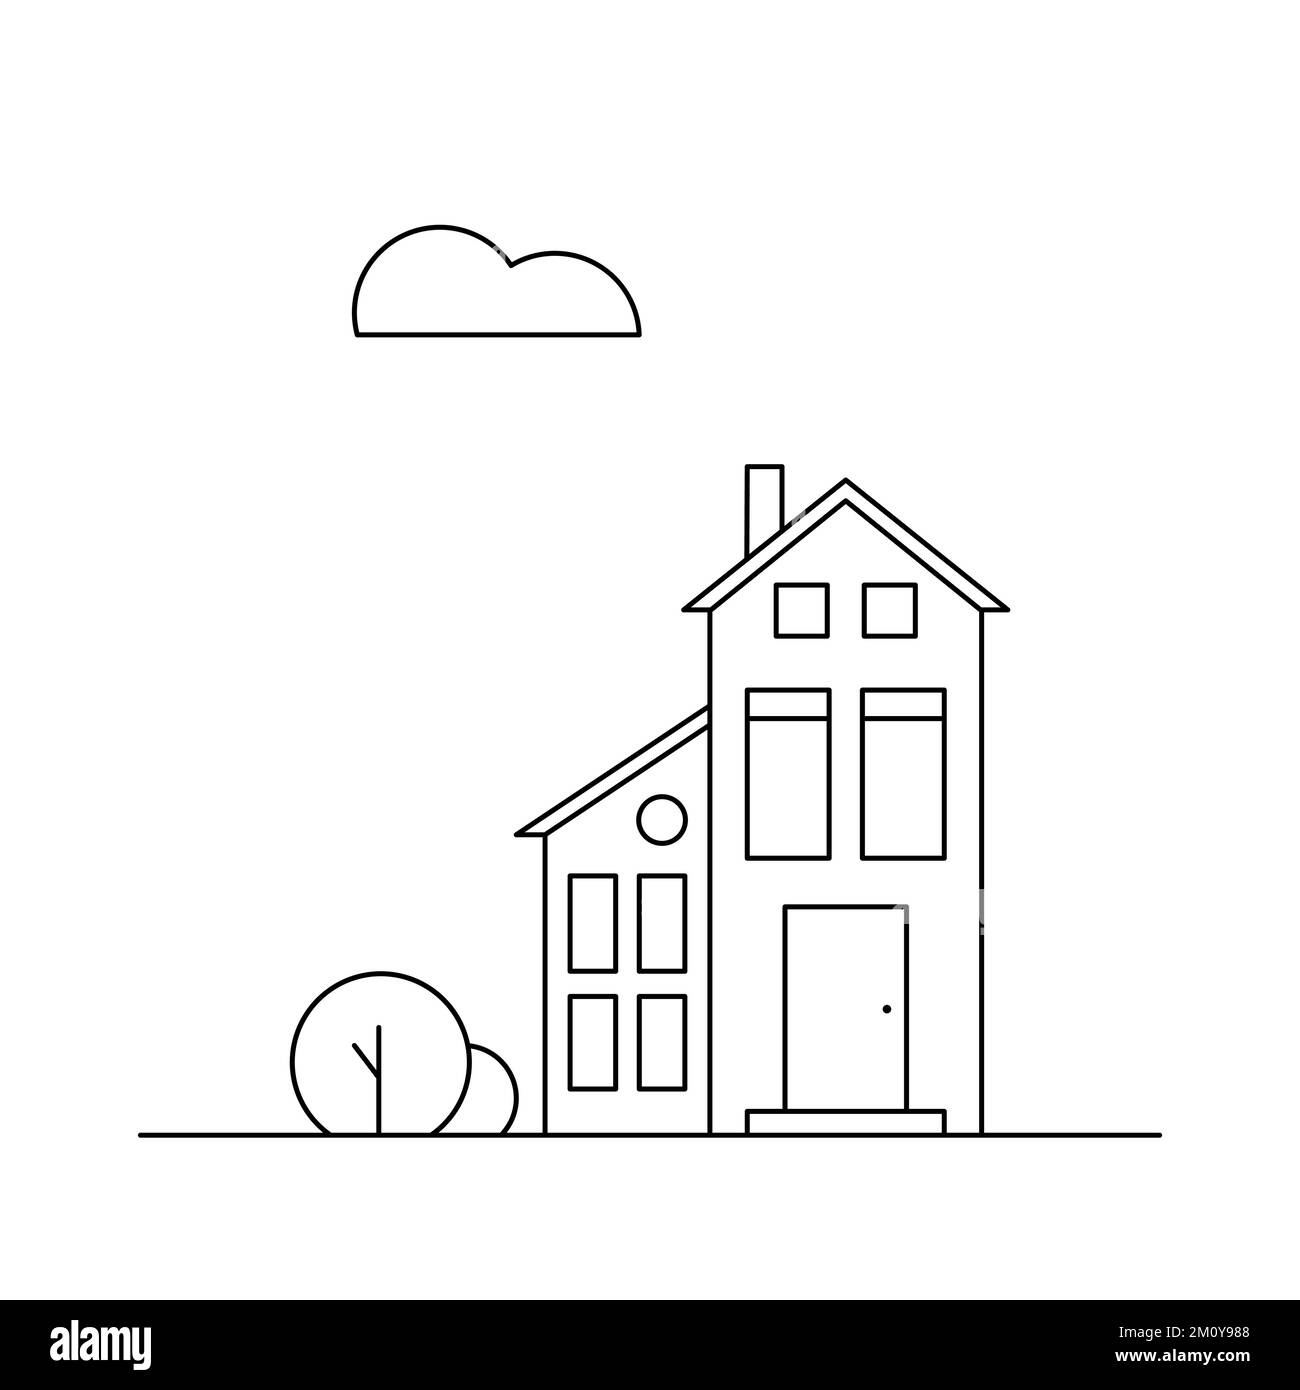 Una casa y un arbusto. Barrio. Ilustración vectorial de líneas. Ilustración del Vector